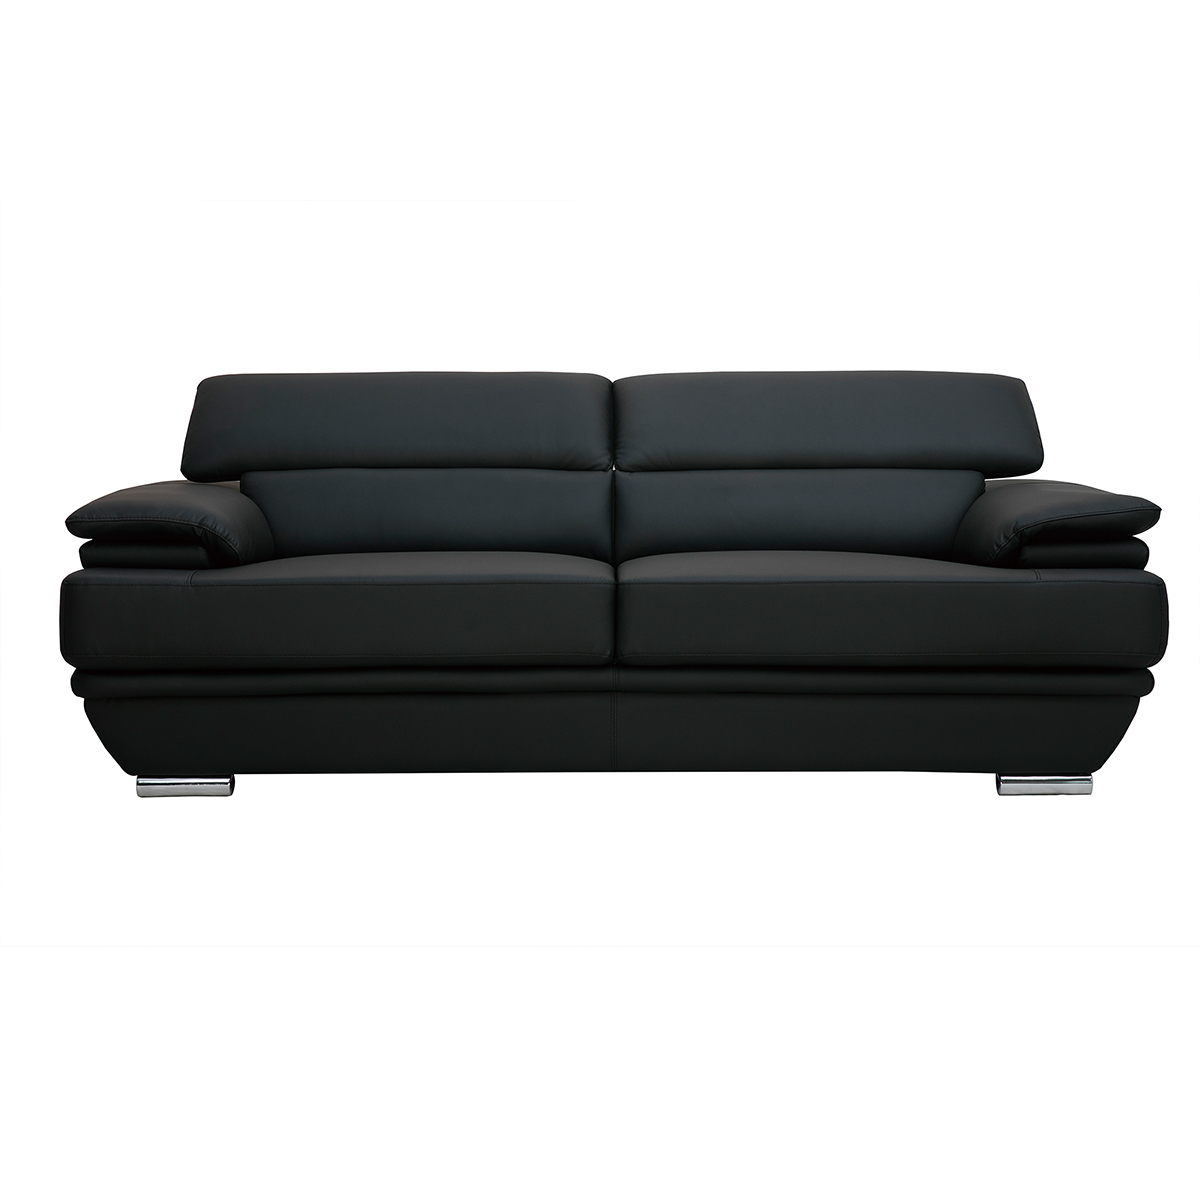 Canapé design avec têtières ajustables 3 places cuir noir et acier chromé EWING vue1